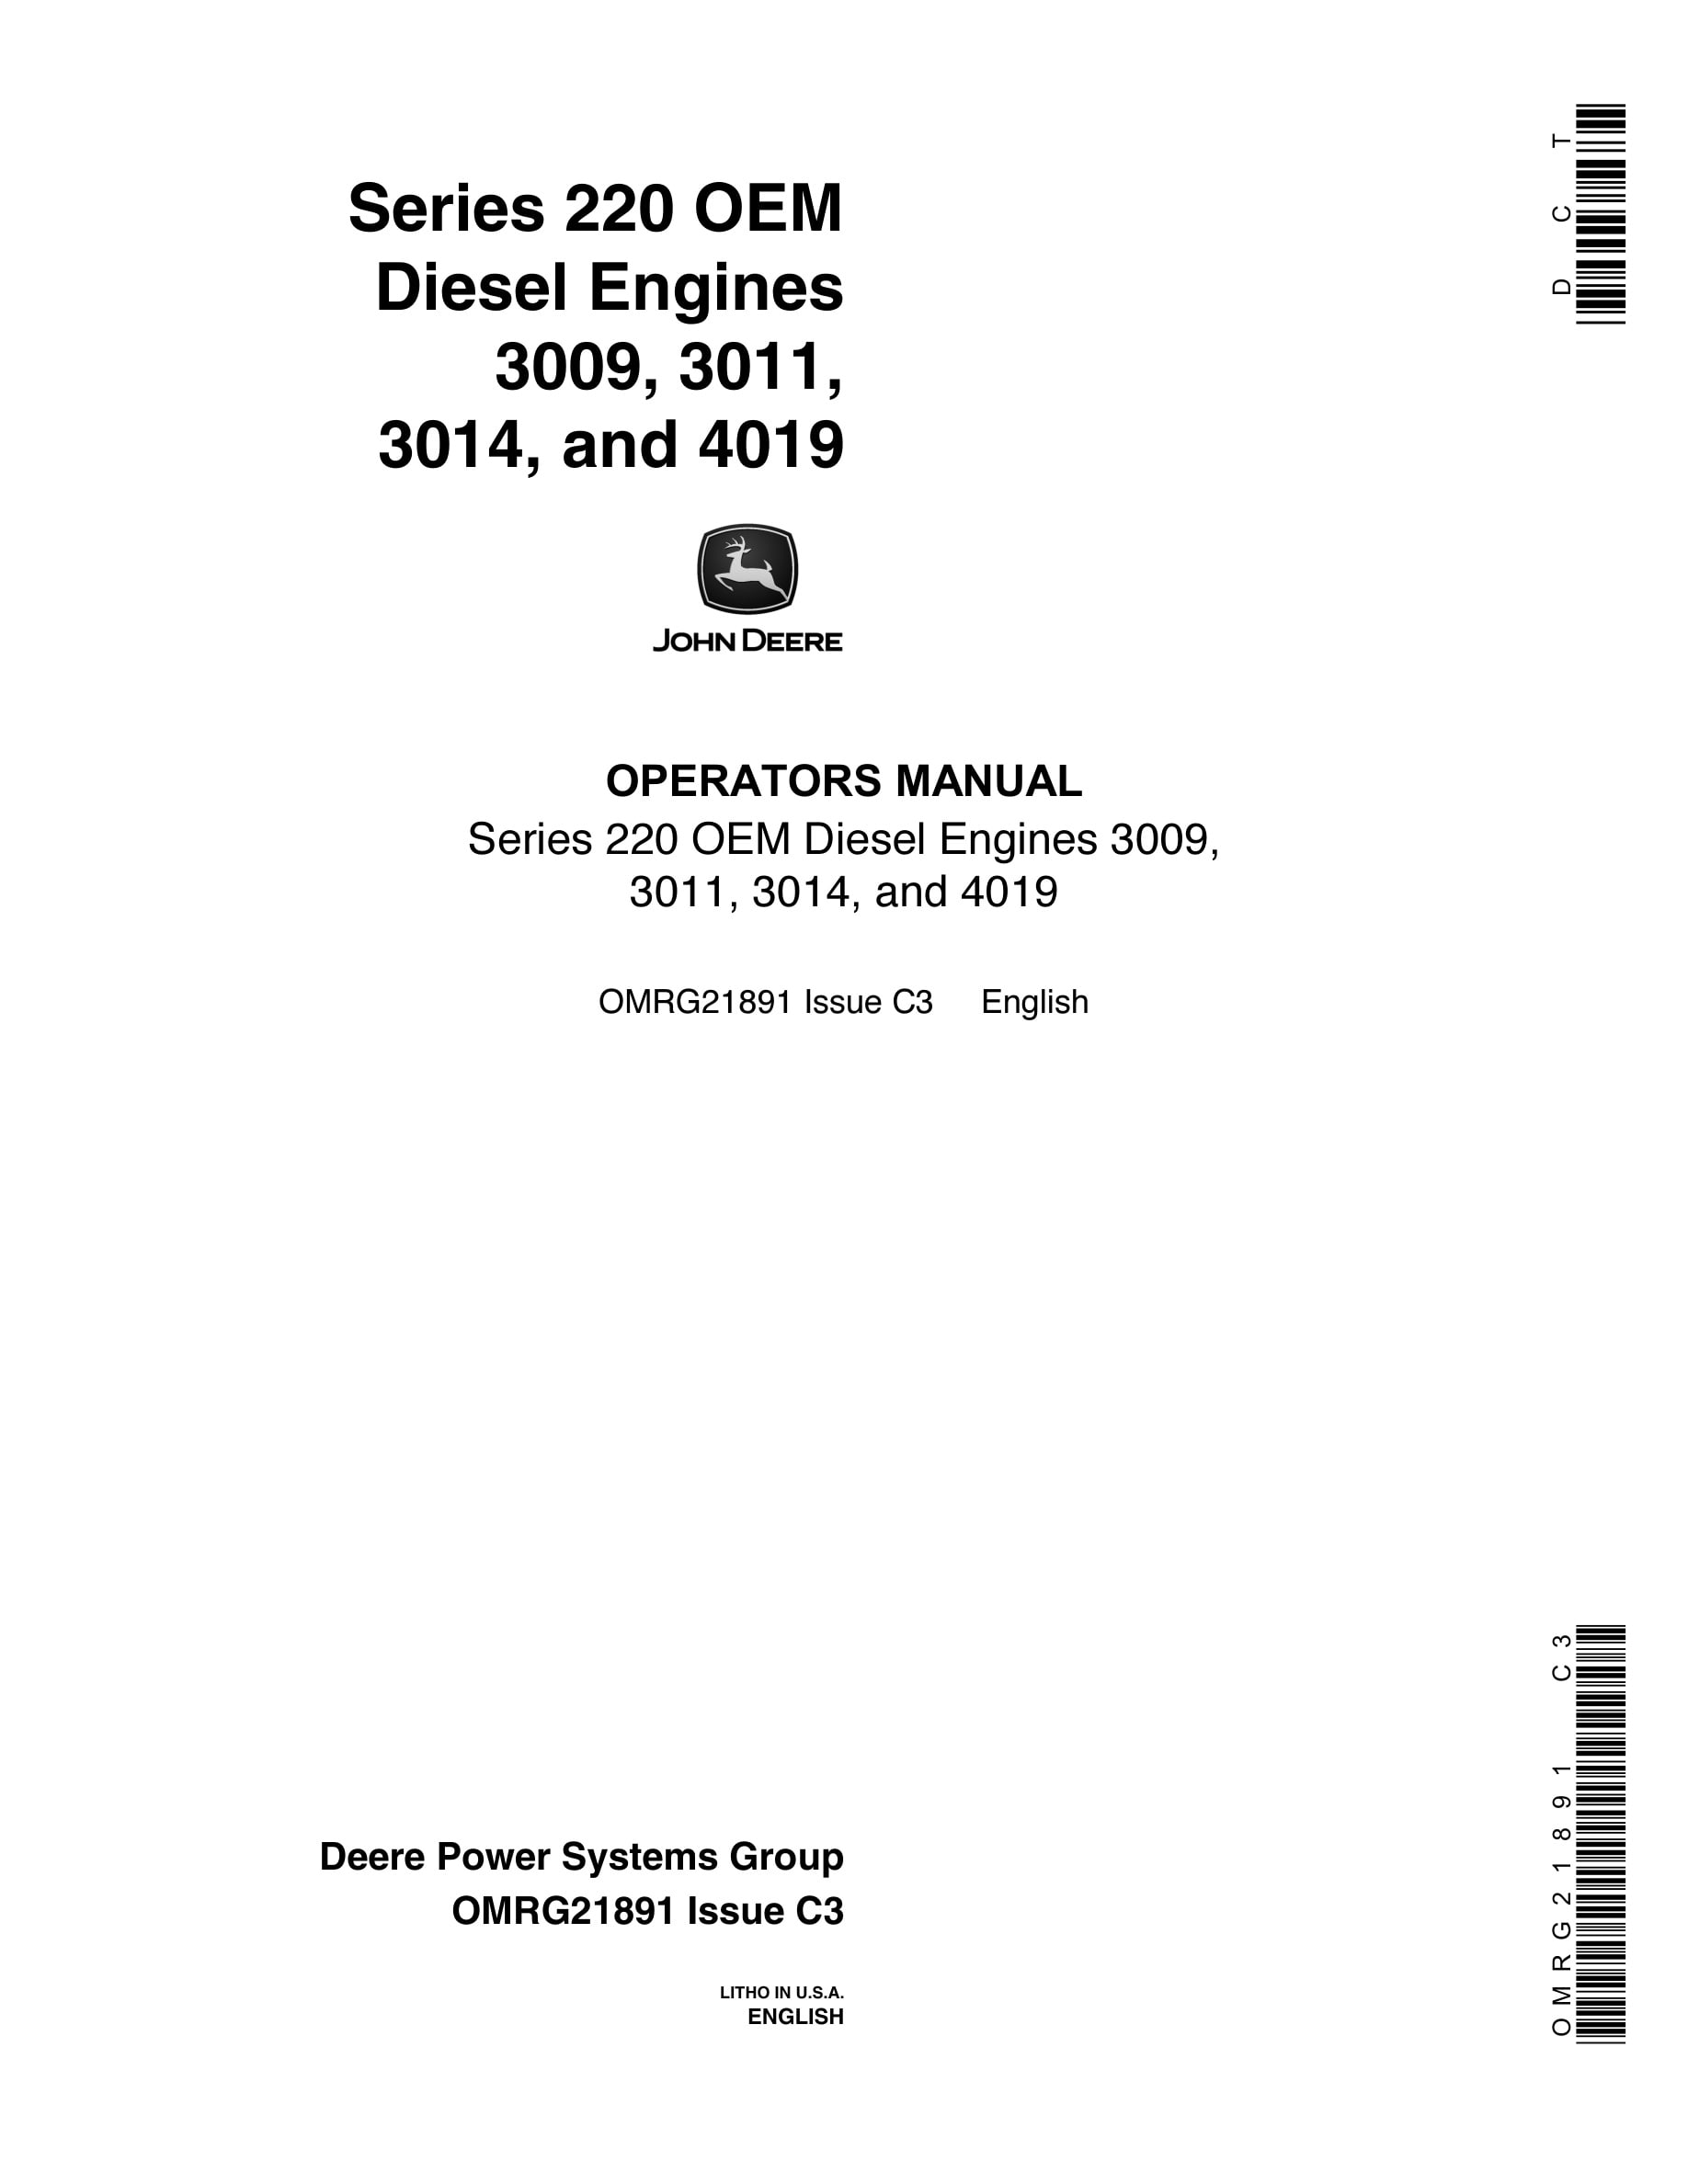 John Deere PowerTech Series 220 OEM 3009 3011 3014 4019 Diesel Engines Operator Manual OMRG21891-1